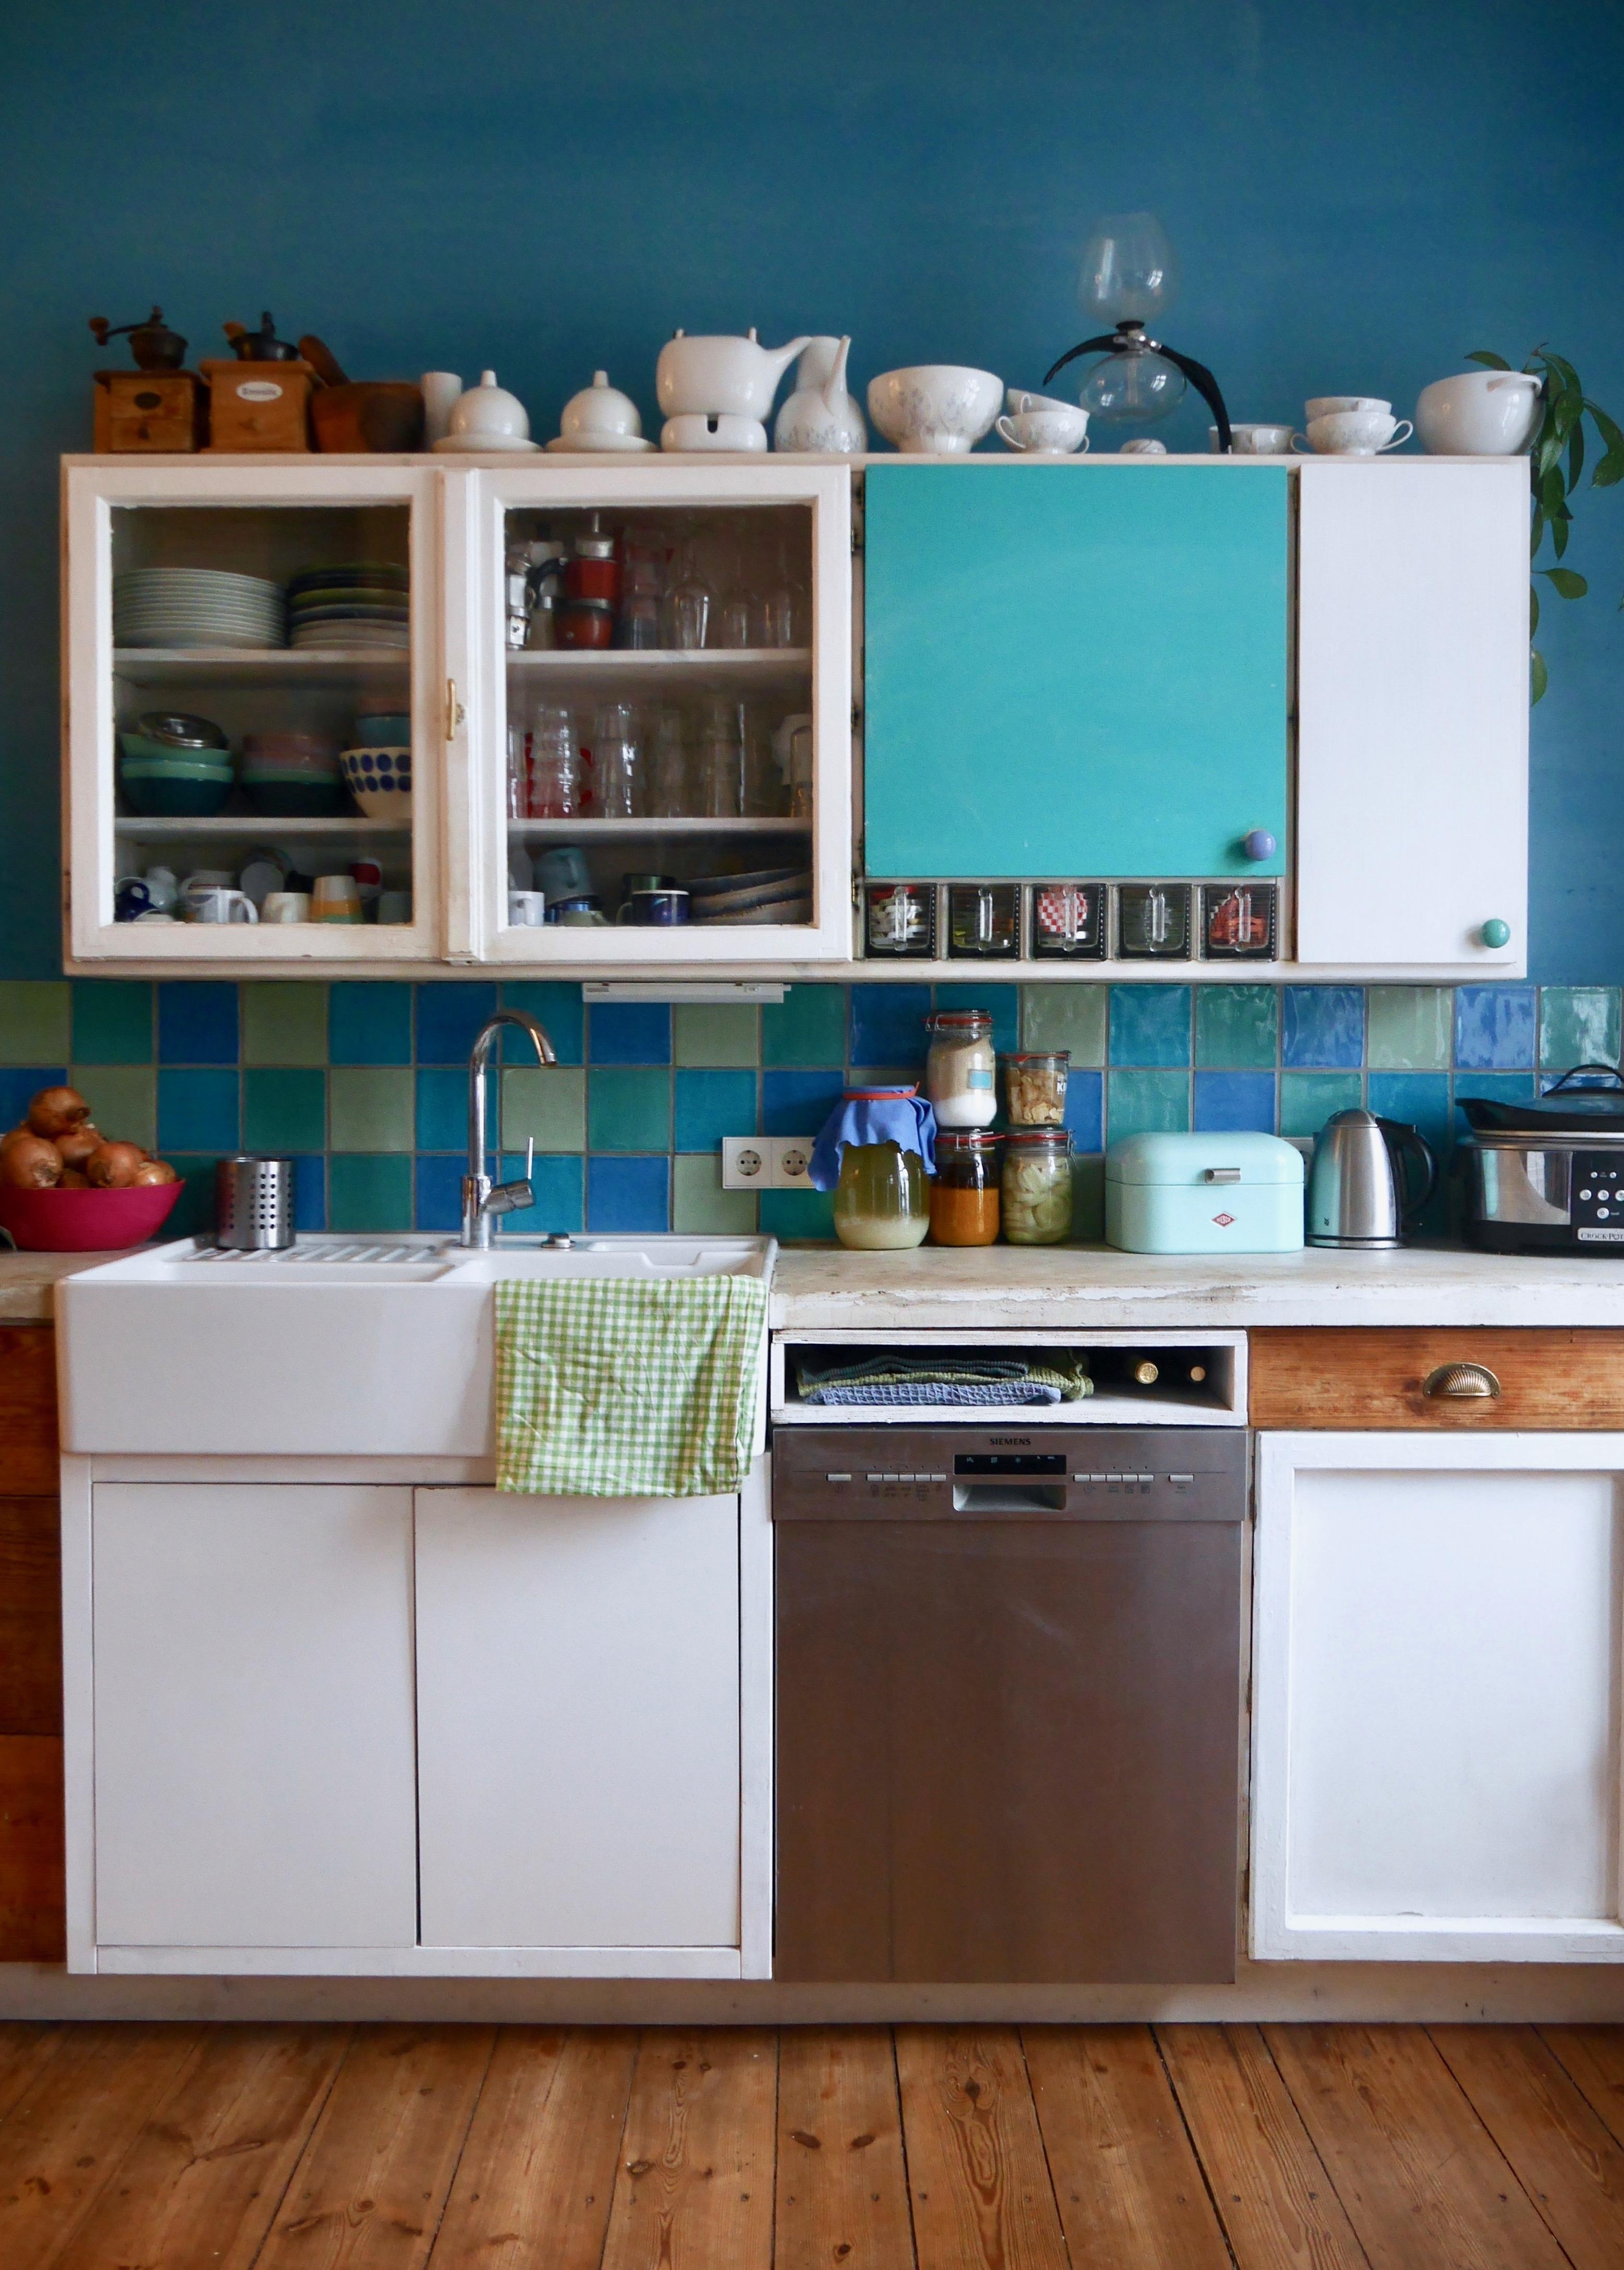 #küche #blau #diyküche #keramikspülbecken #blauewand